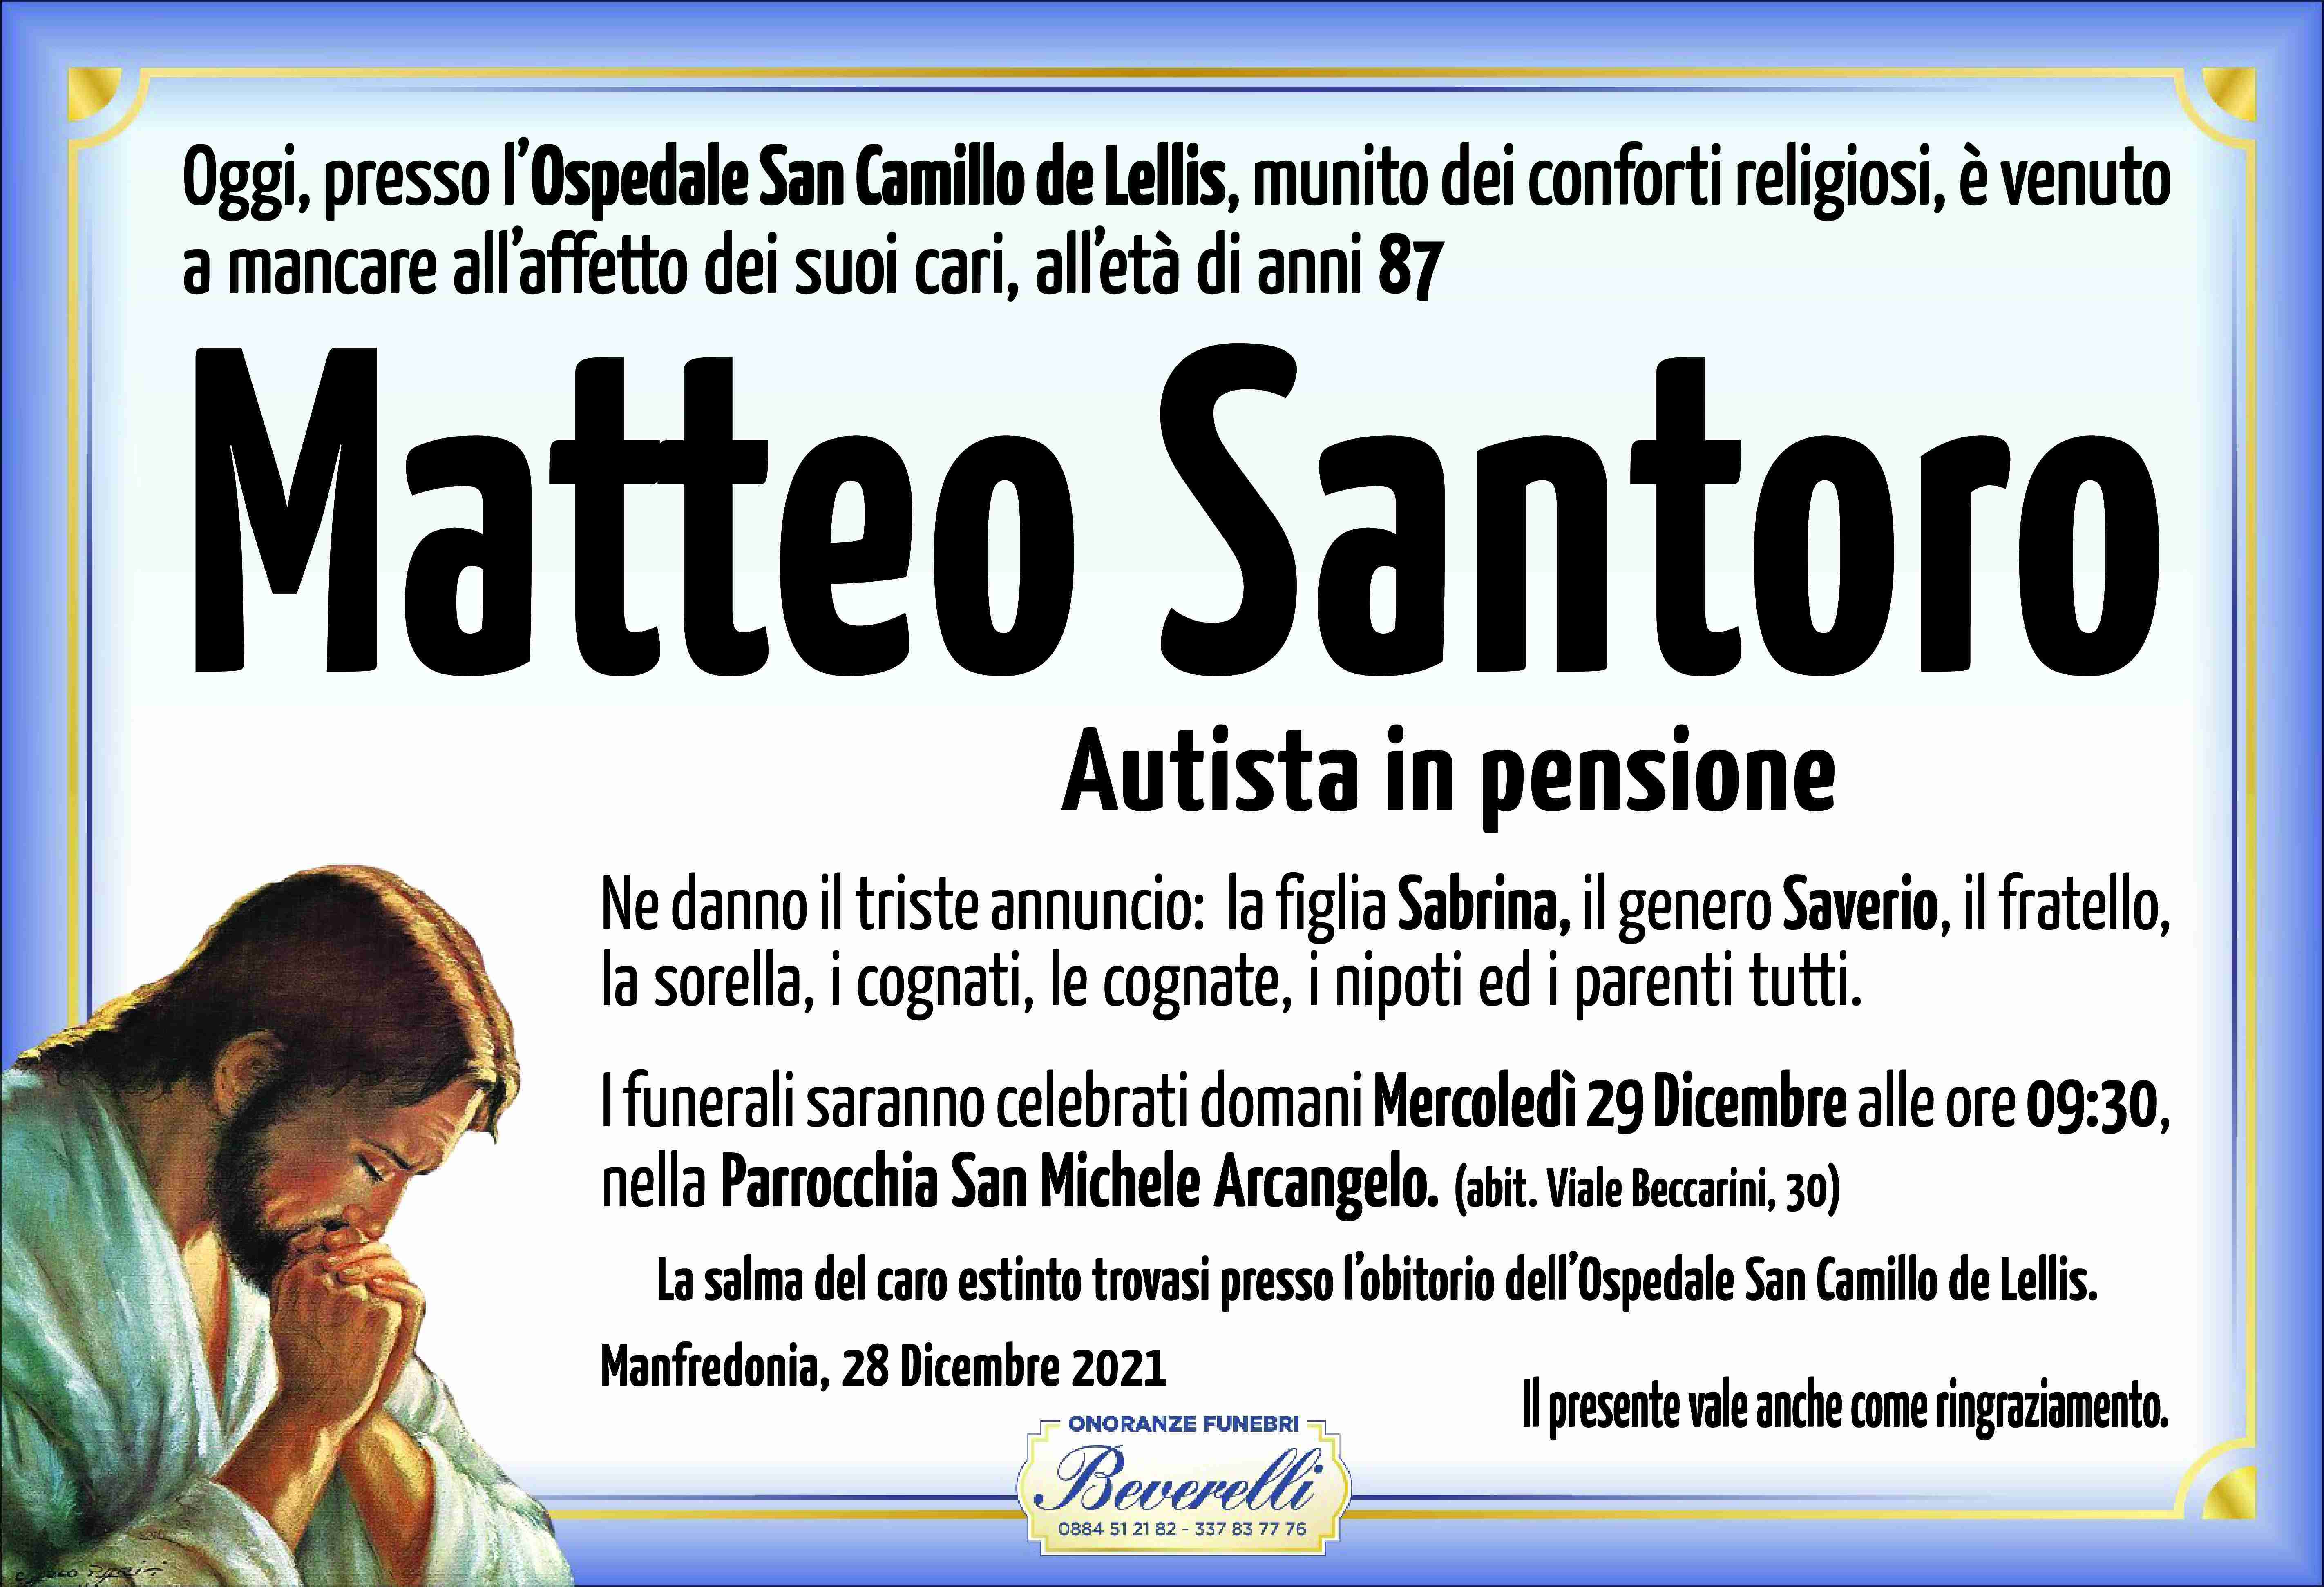 Matteo Santoro